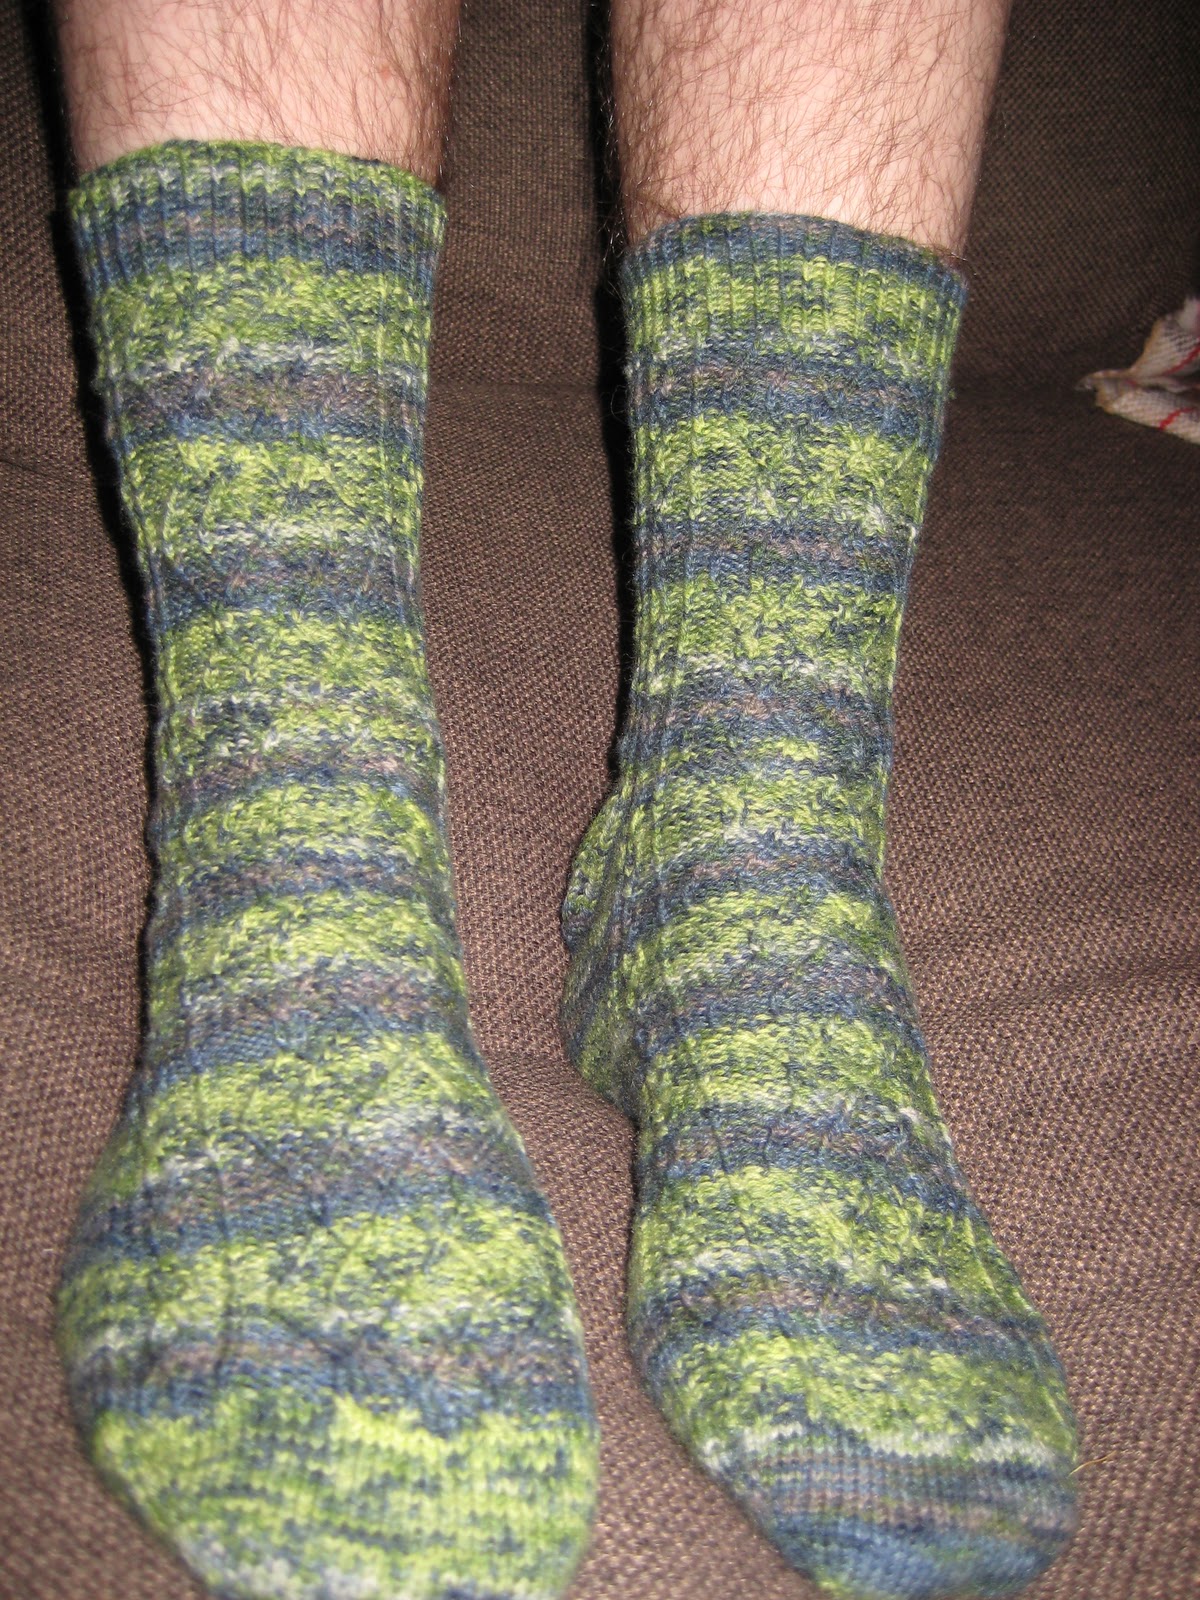 Jenny's blog on knitting: FO's 2010